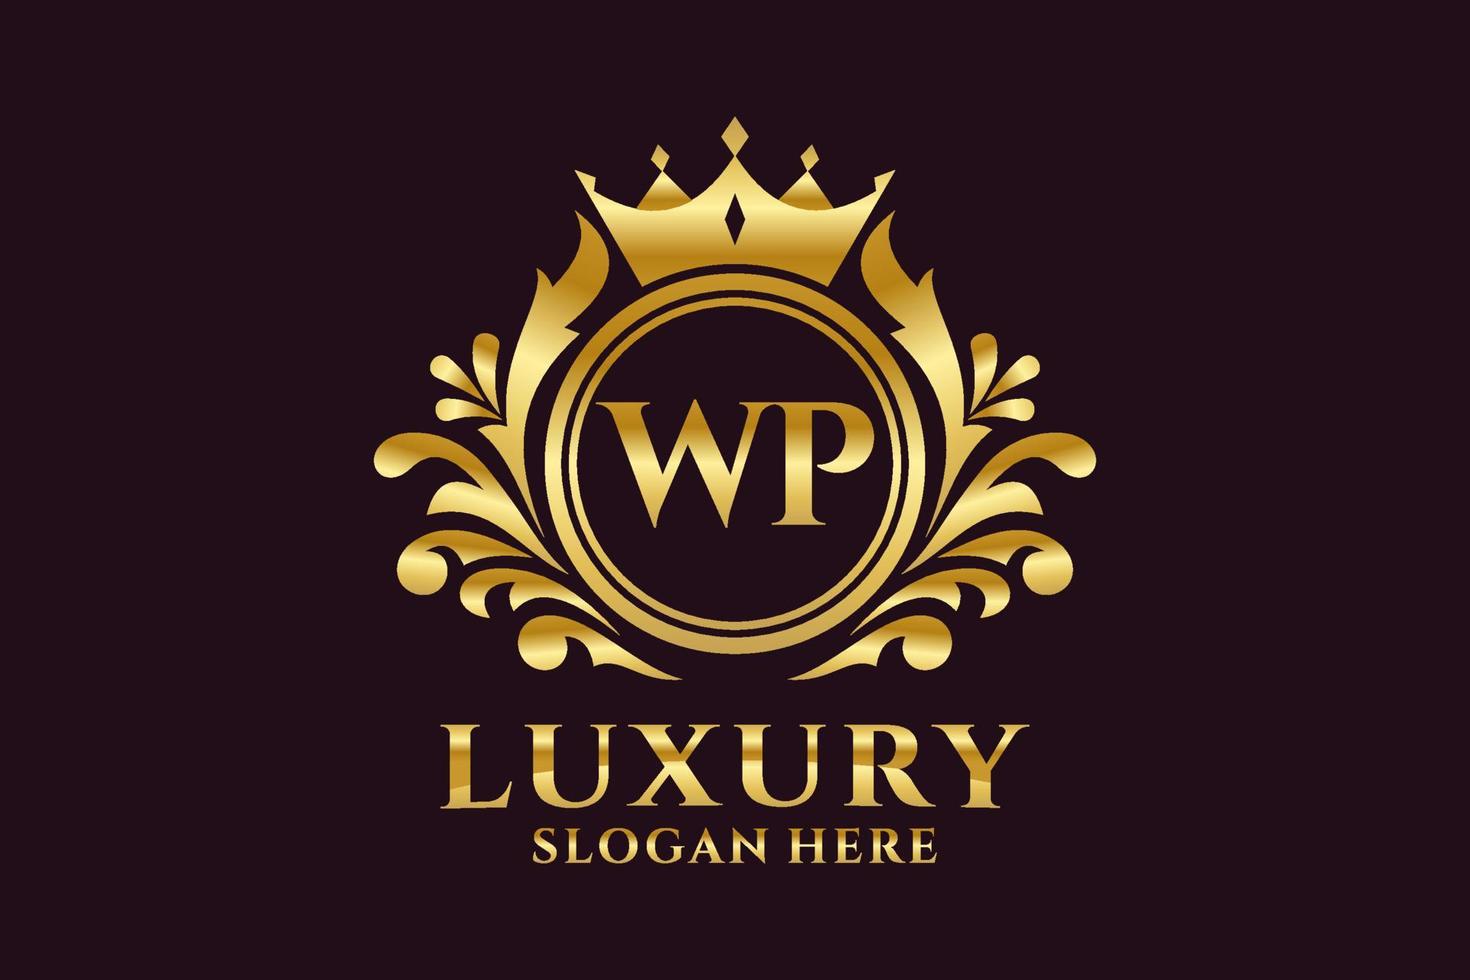 Royal Luxury Logo-Vorlage mit anfänglichem wp-Buchstaben in Vektorgrafiken für luxuriöse Branding-Projekte und andere Vektorillustrationen. vektor